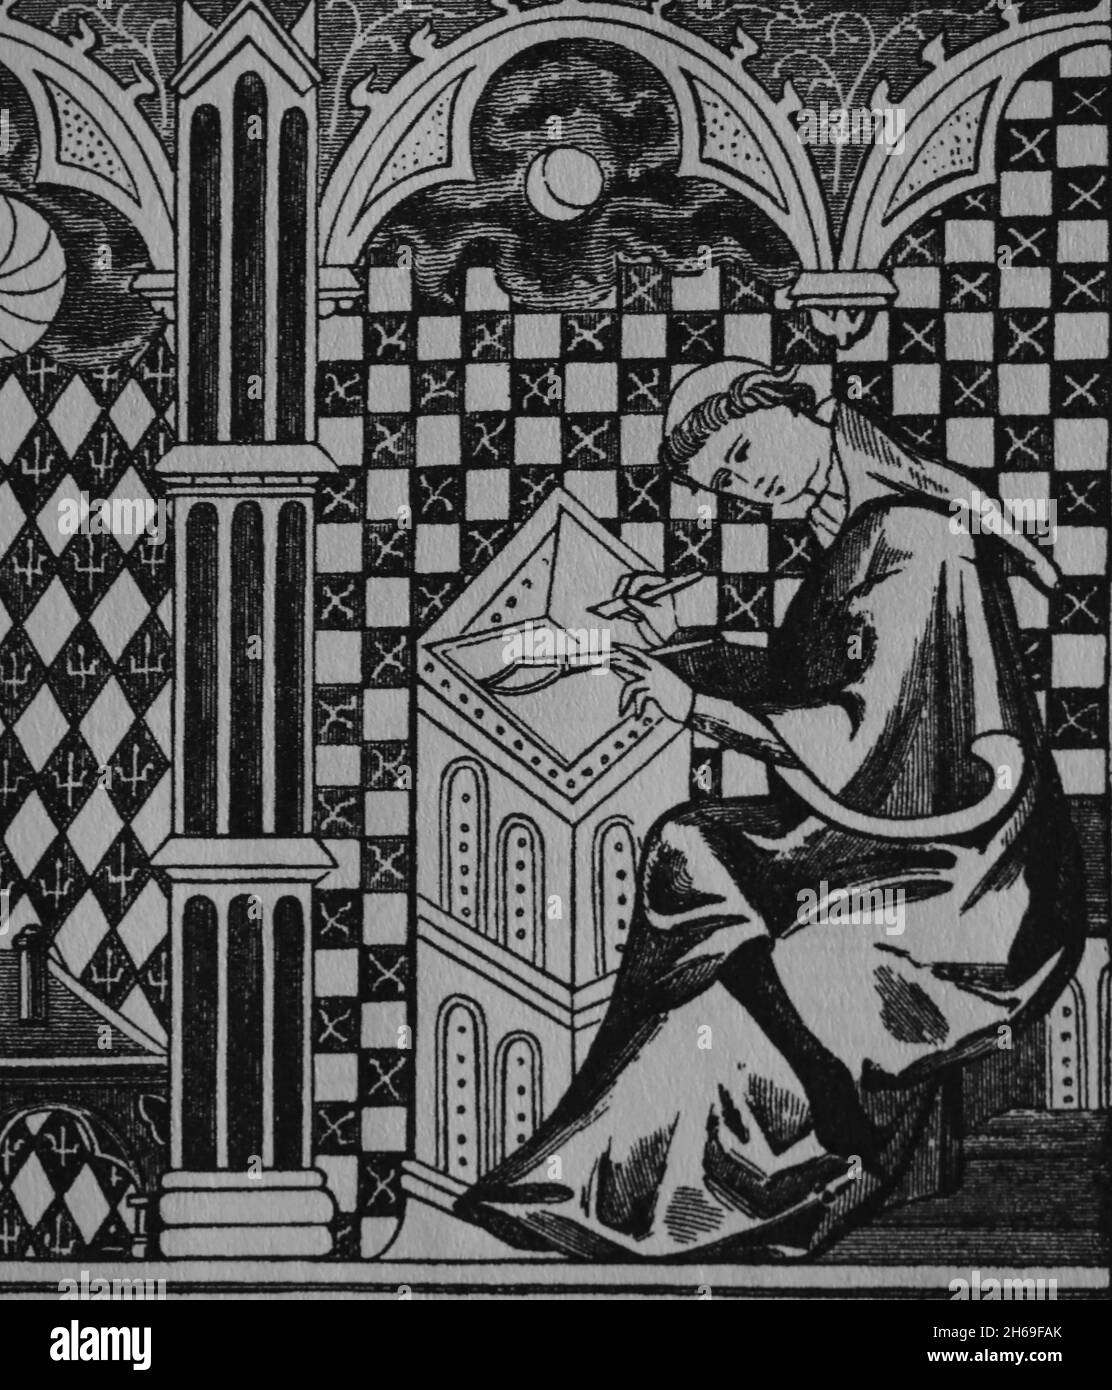 Matematici medievali. Mistico copiare un manoscritto. Incisione dopo una miniatura nel 13 ° secolo. Foto Stock